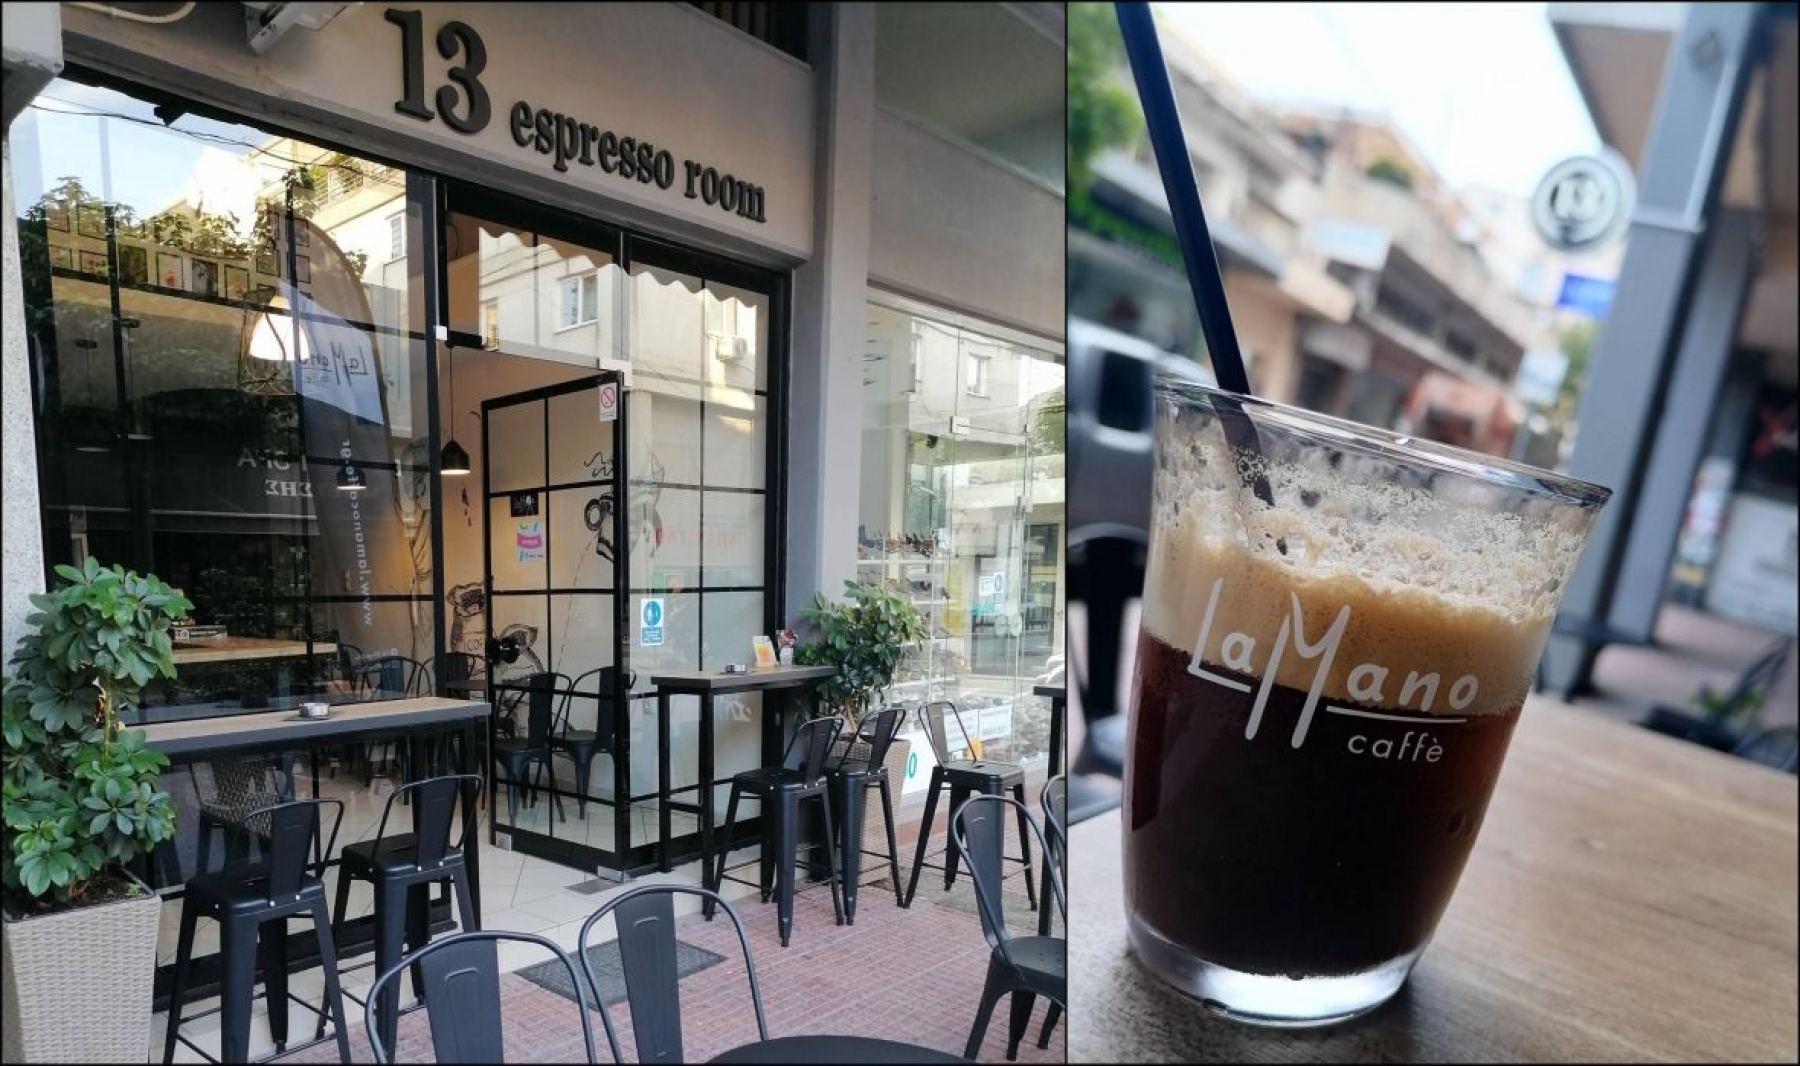 Ο αγαπημένος σας καφές La Mano τώρα και στο κέντρο της πόλης, στο 13 Espresso Room!